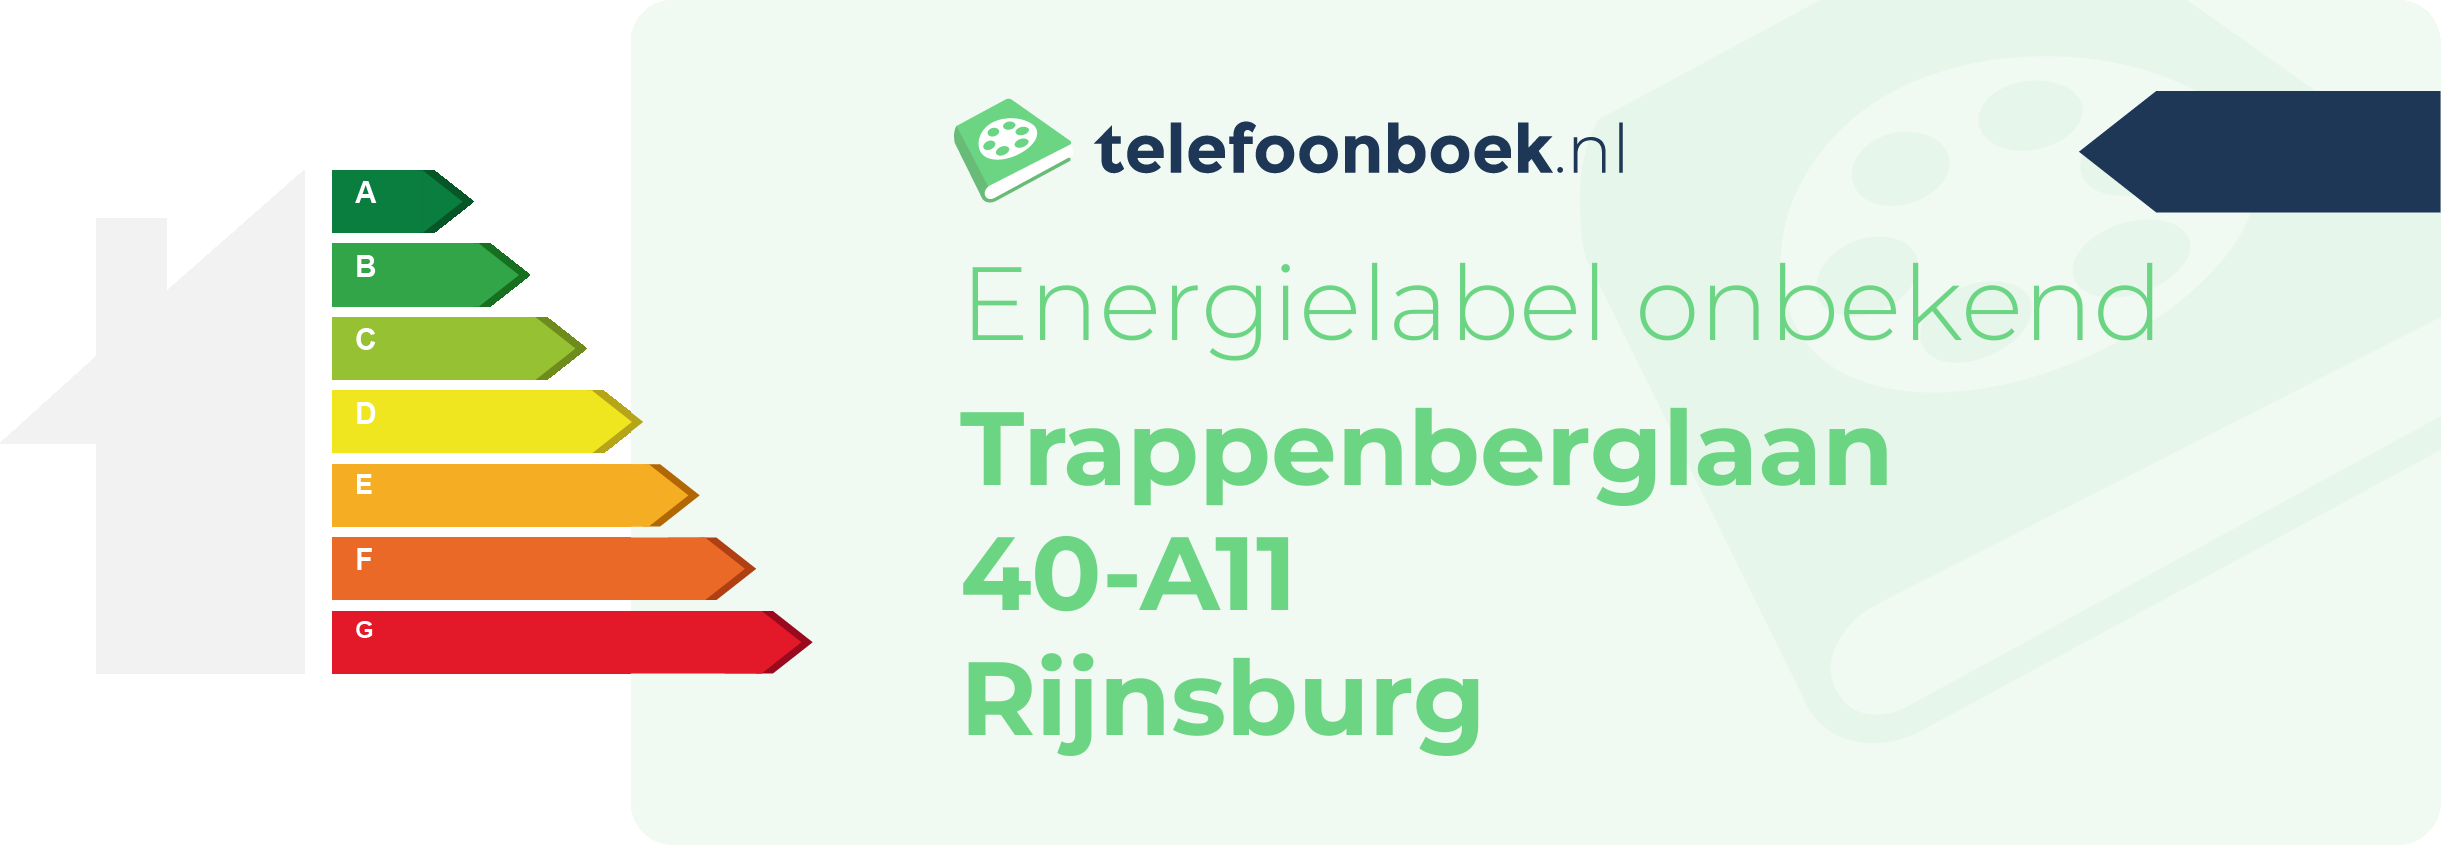 Energielabel Trappenberglaan 40-A11 Rijnsburg